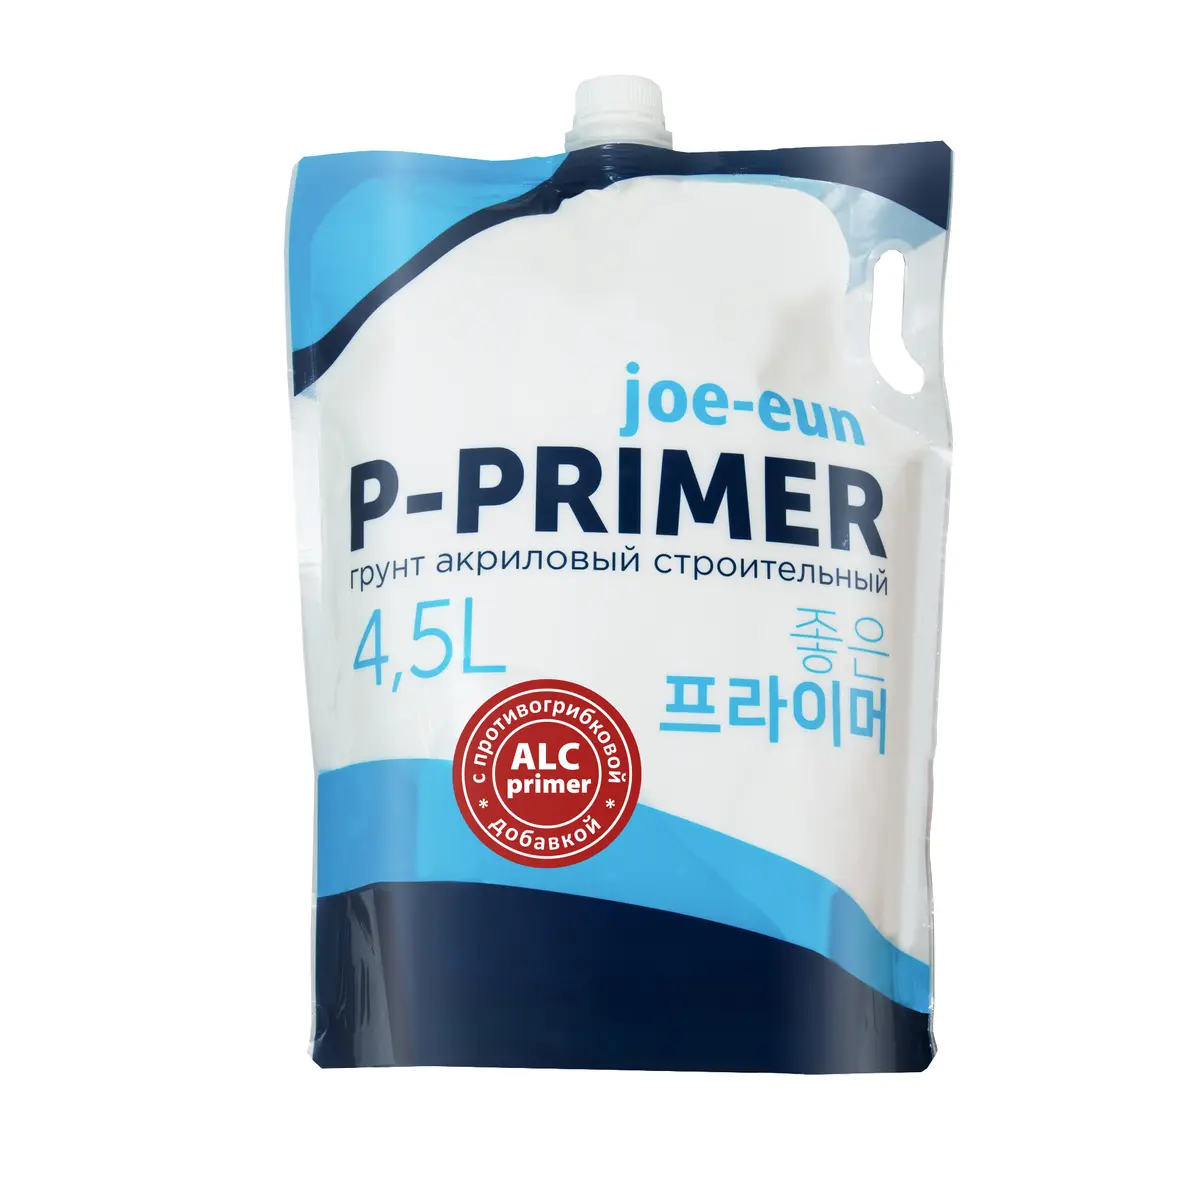 ГрунтпротивогрибковыйP-PrimerALC-Joh-Eun45лдойпак